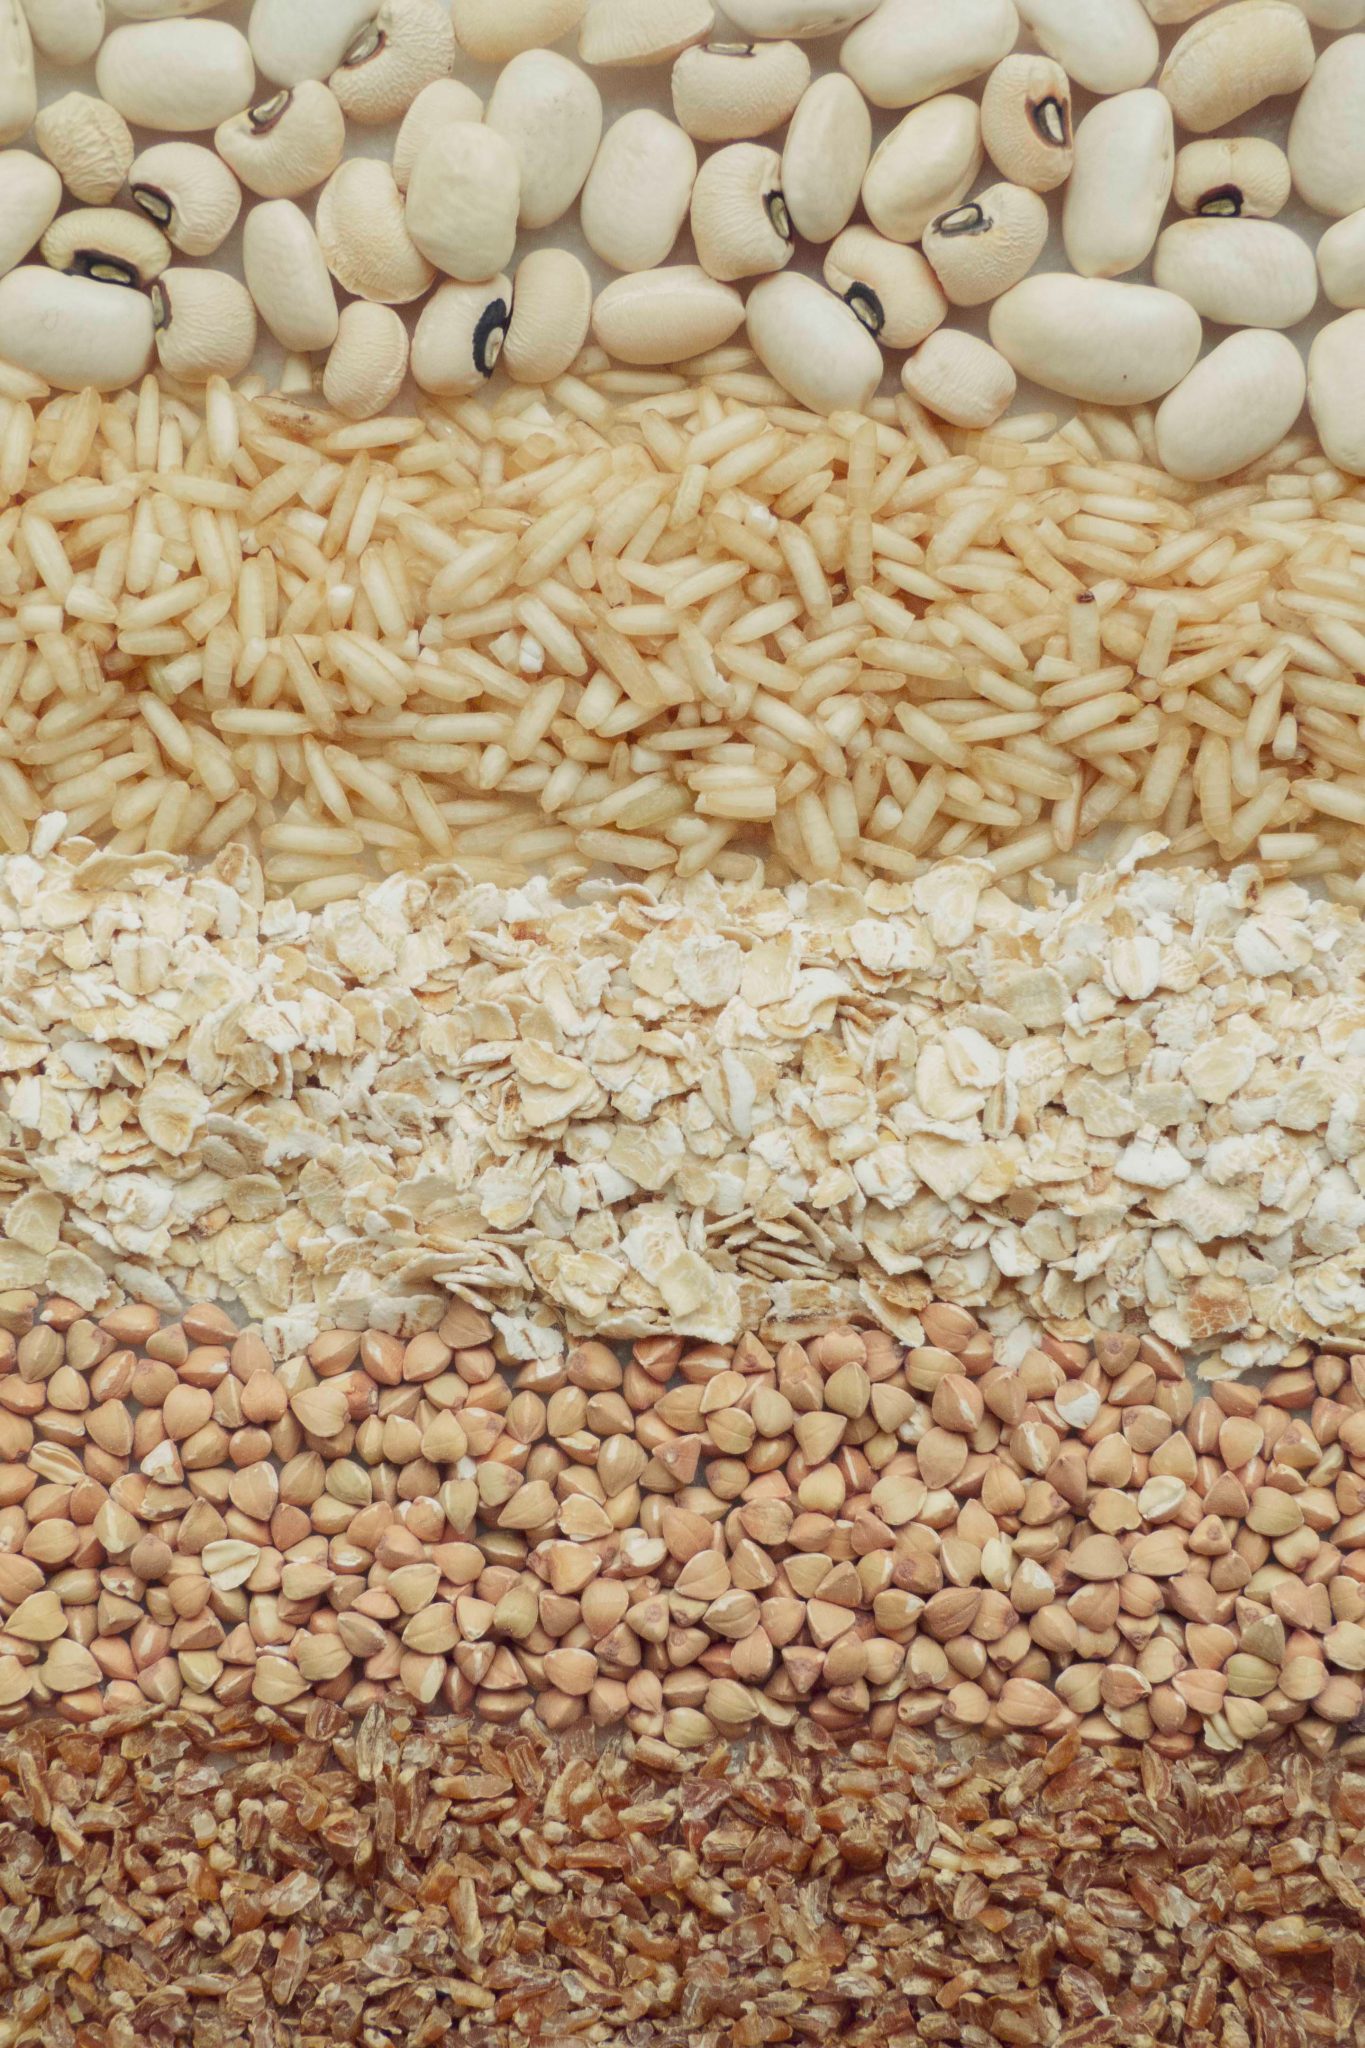 rice, beans, oats